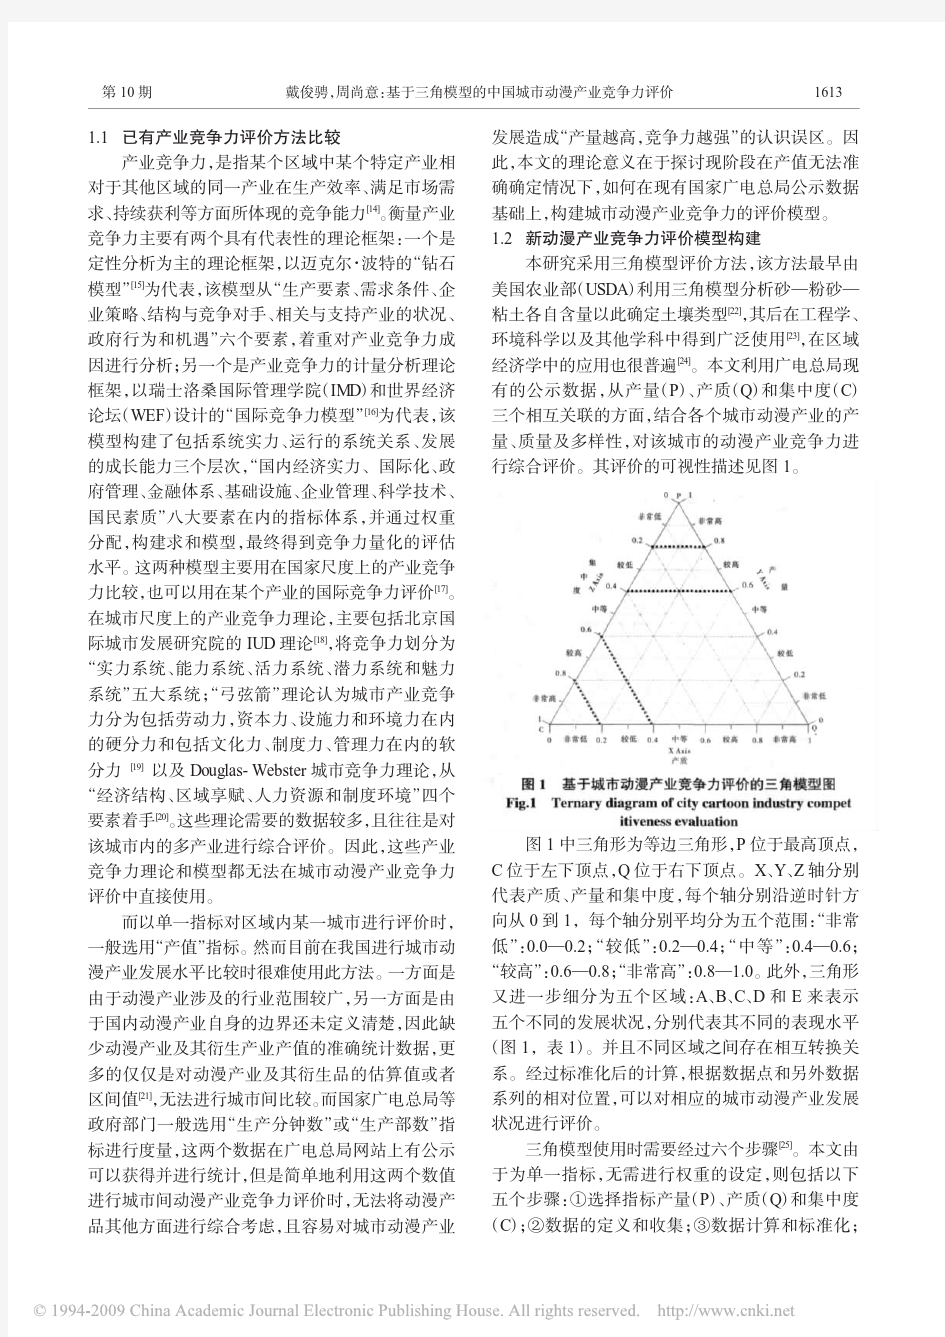 基于三角模型的中国城市动漫产业竞争力评价